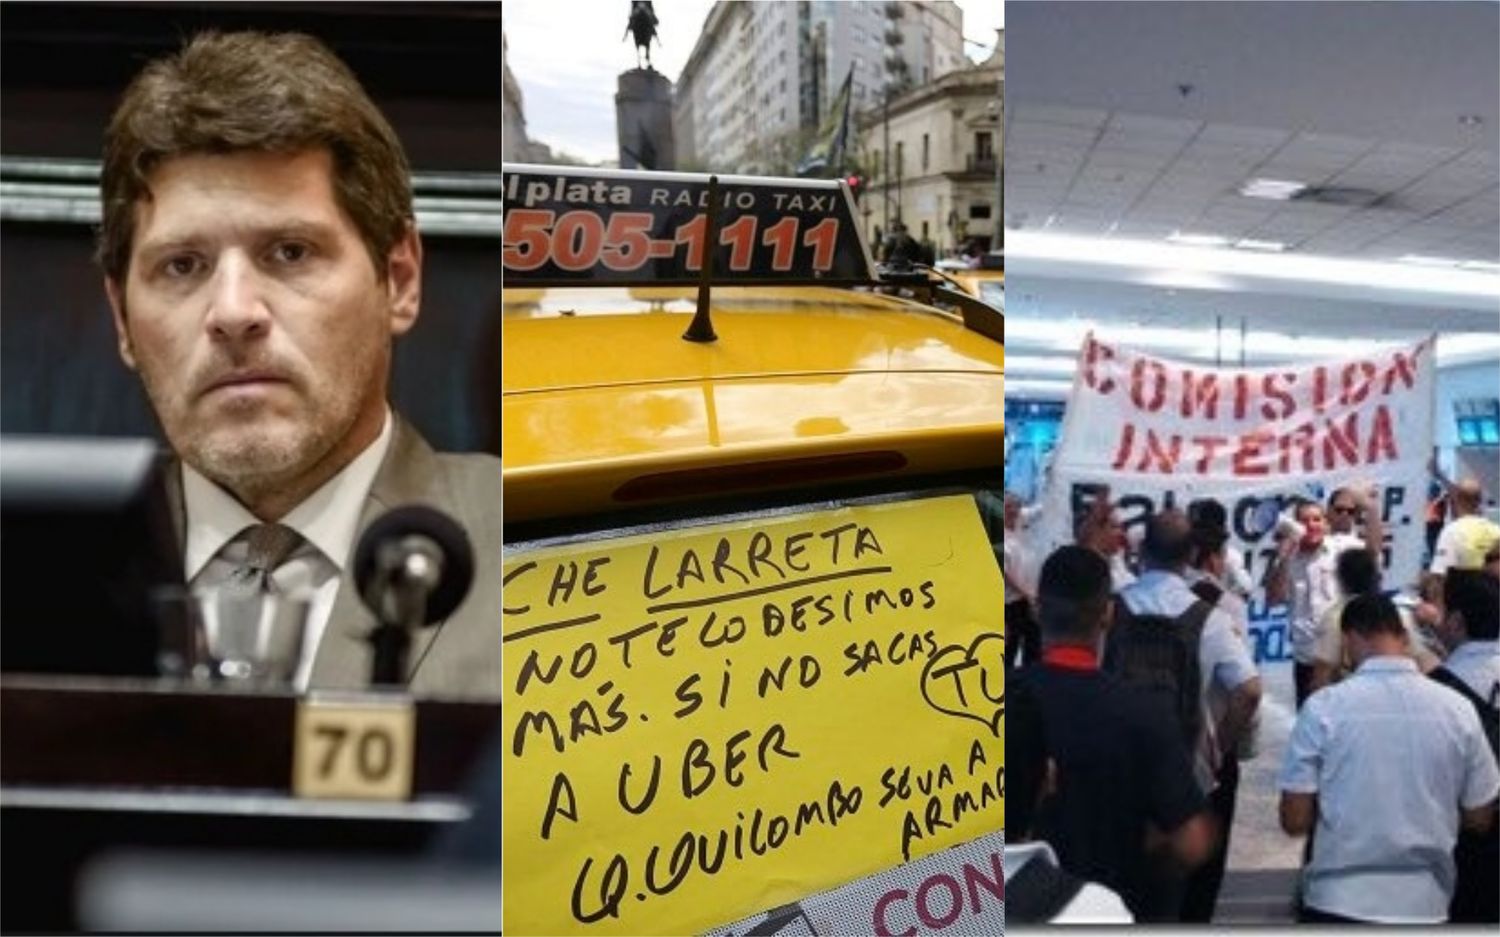 Castello se hartó de las "mafias" que "hacen prohibir Uber y paralizan Aerolíneas Argentinas" 